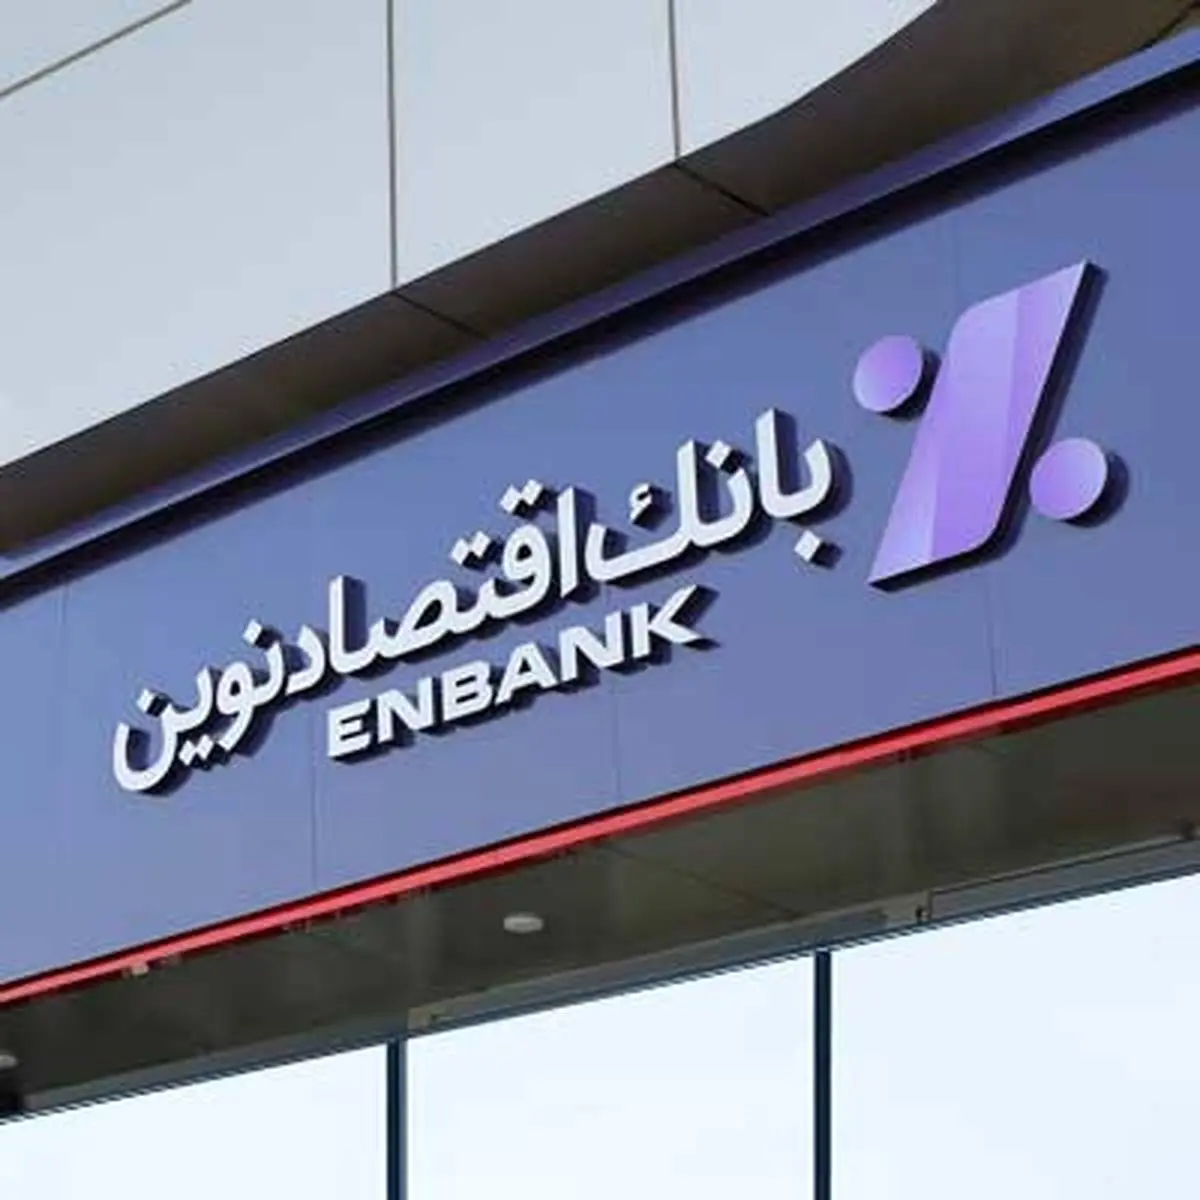  انتقال شعبه فردوسی اصفهان بانک اقتصادنوین به محل جدید 